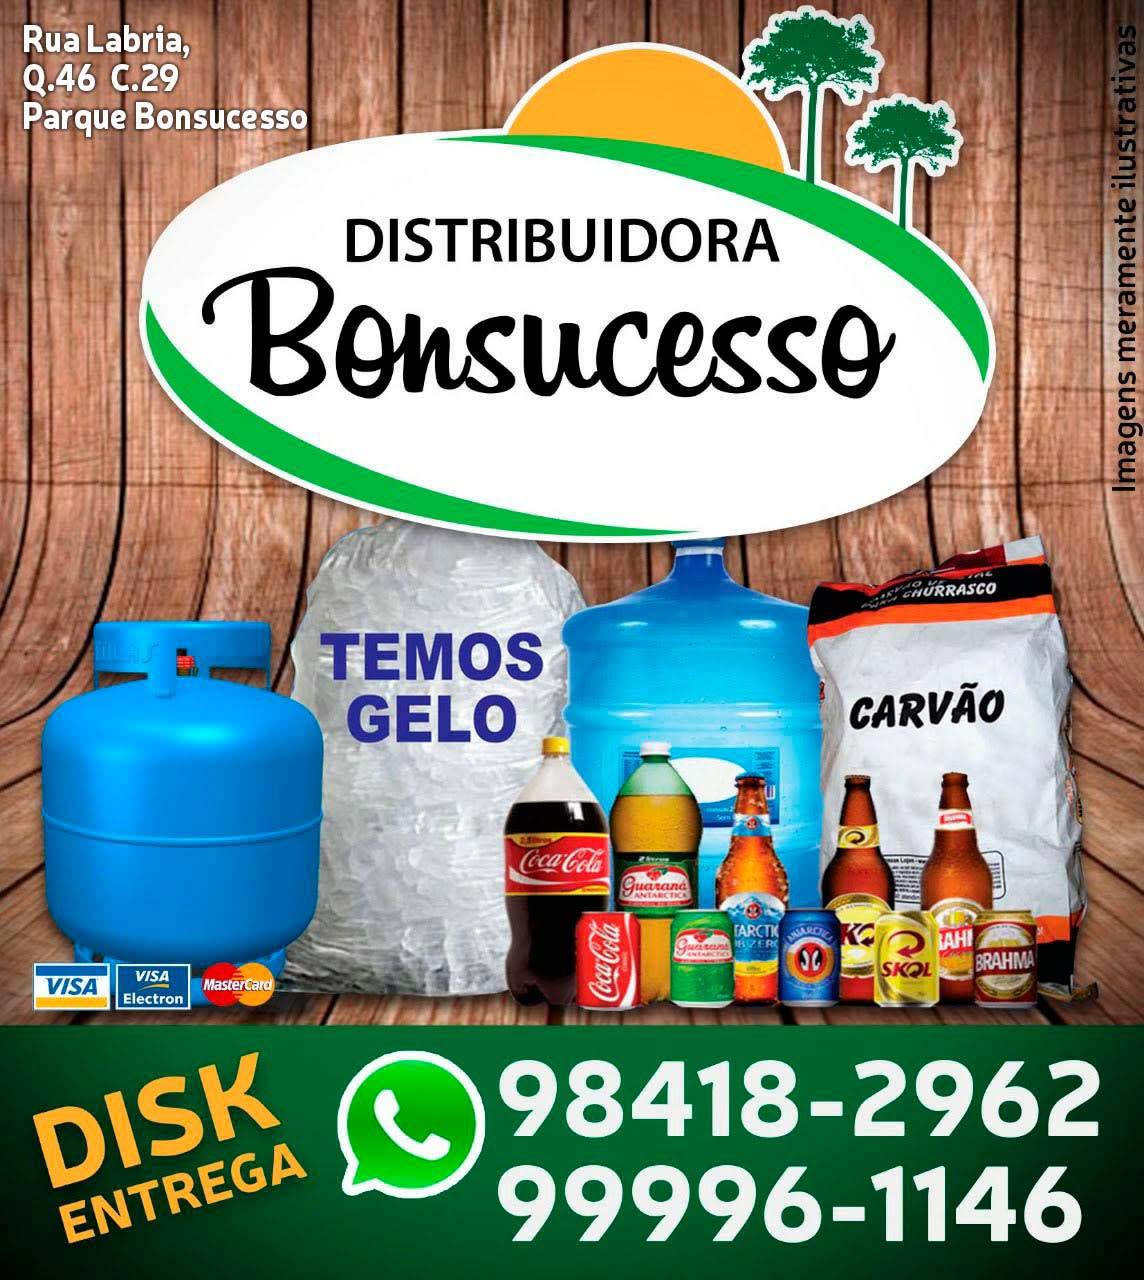 Distribuidora Bonsucesso